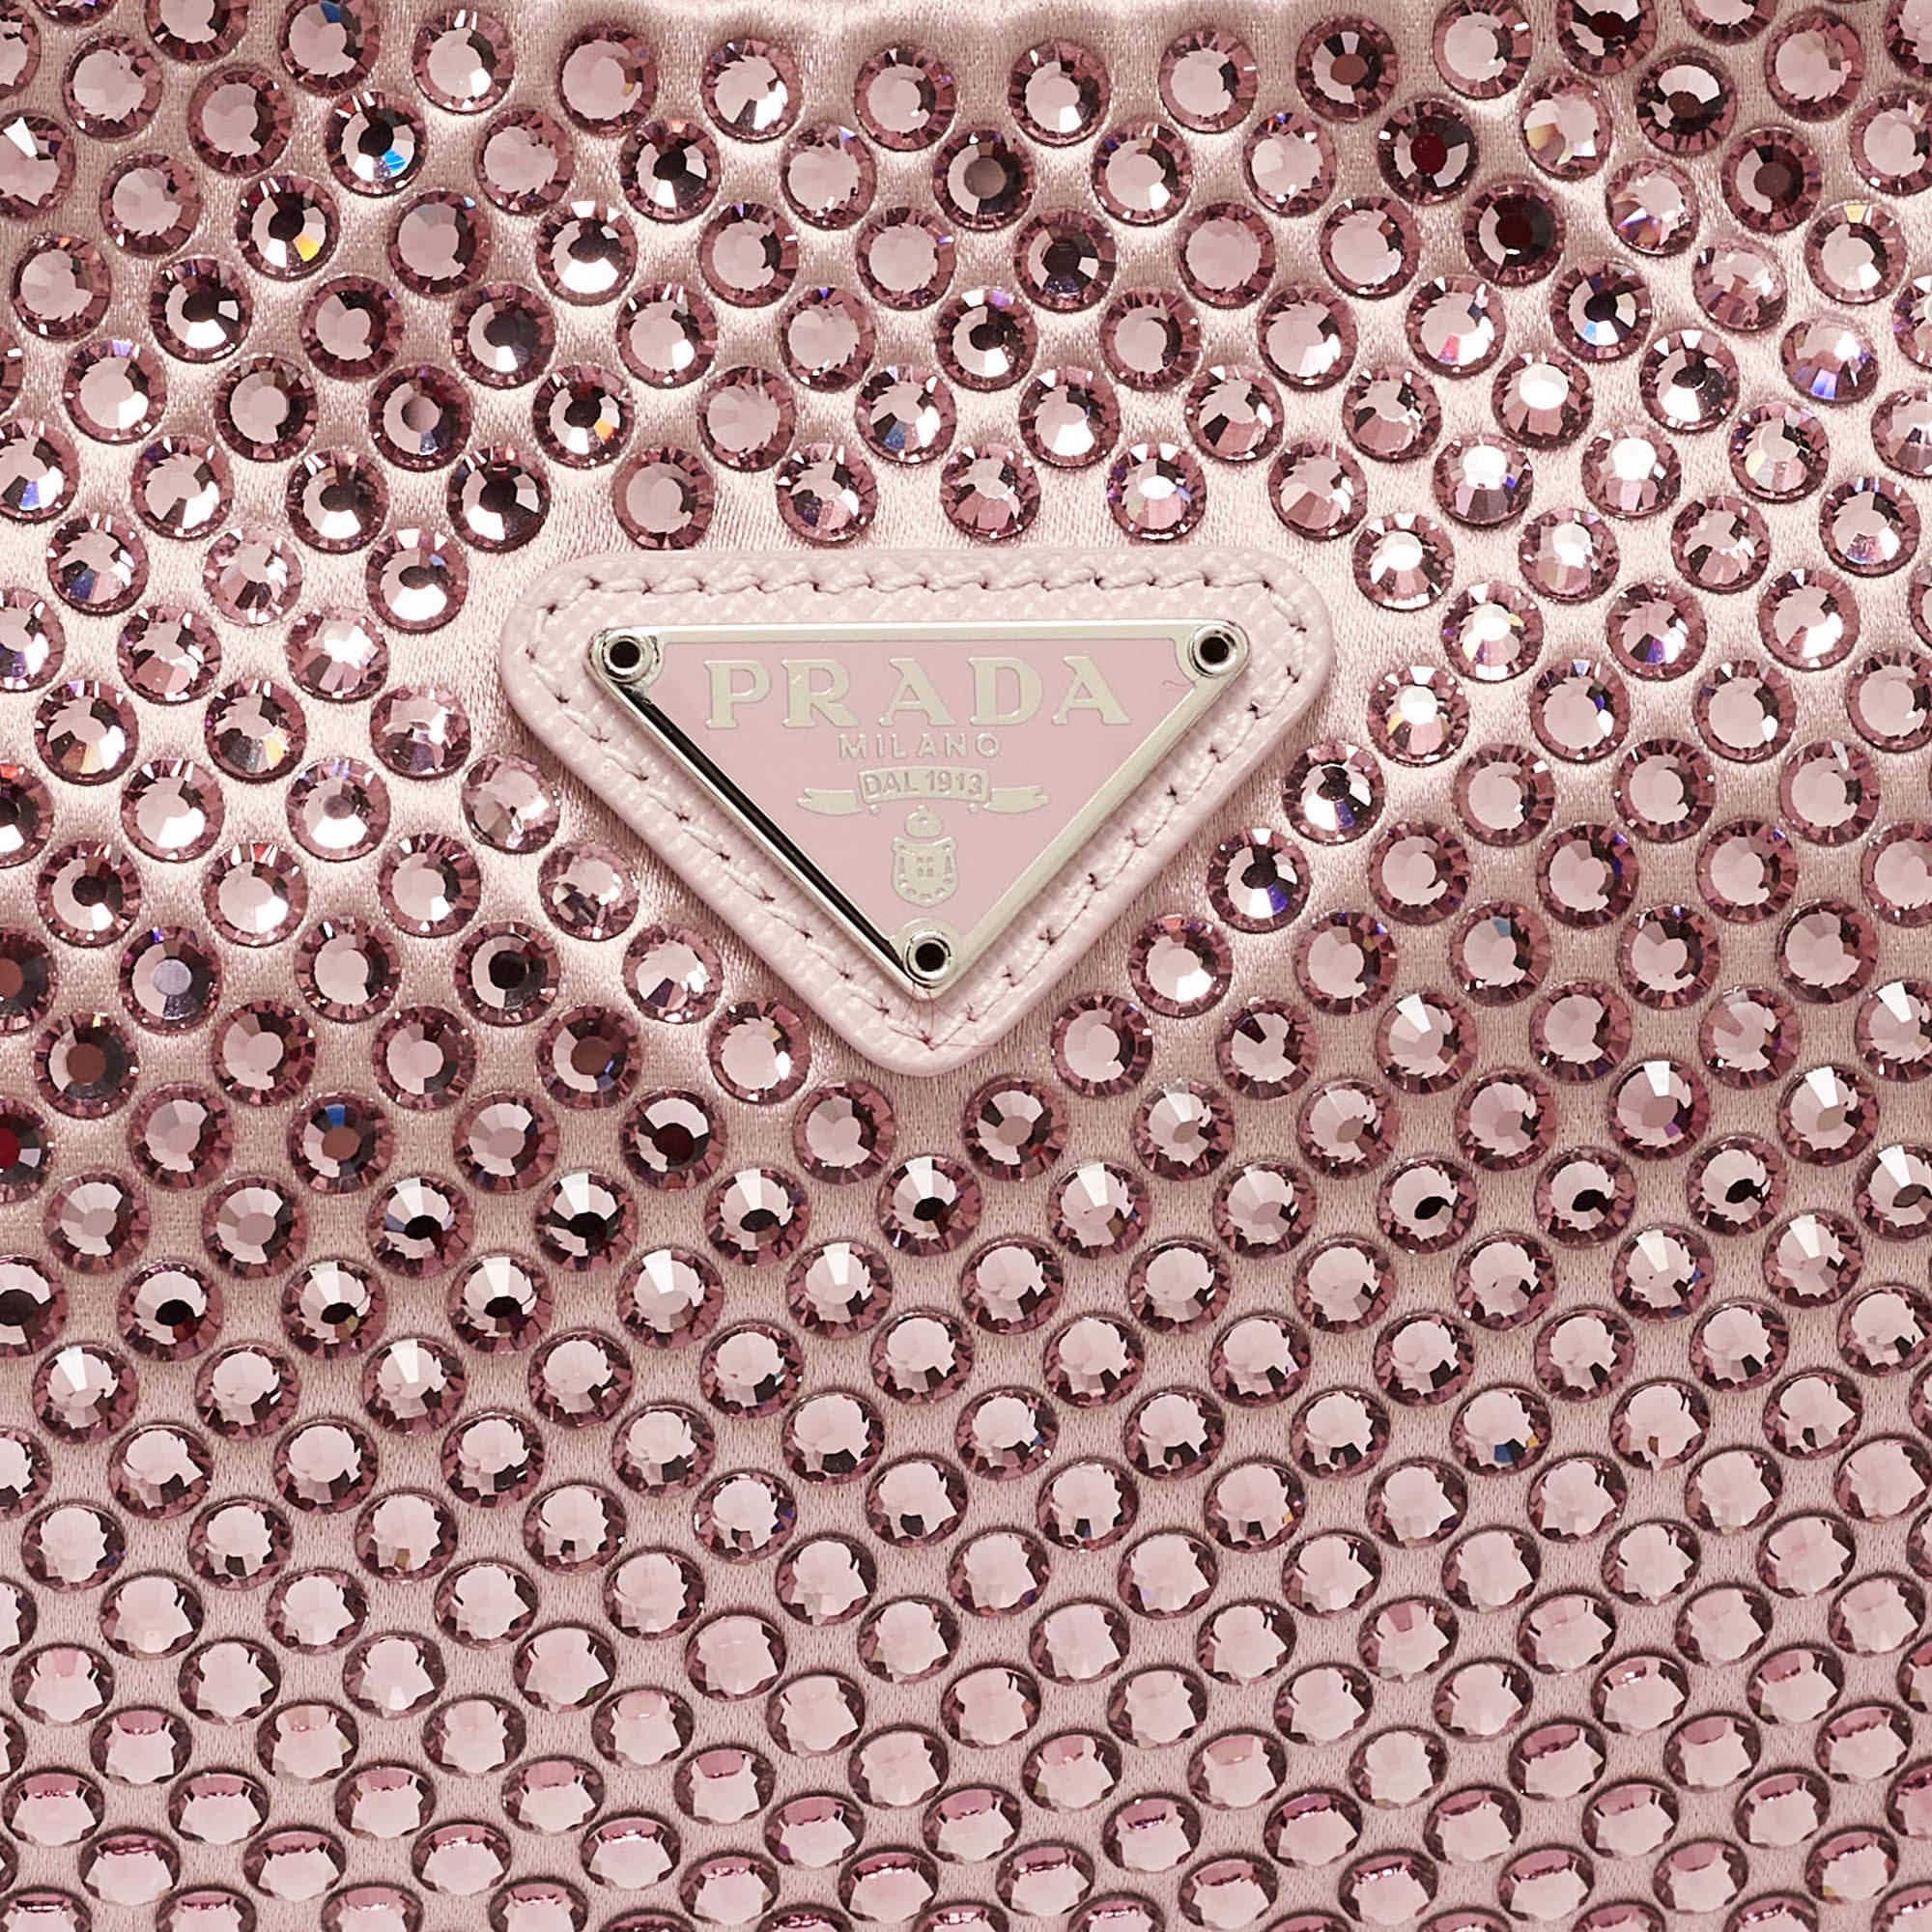 Prada Light Pink Satin Crystals Re-Edition 2000 Baguette Bag For Sale 4